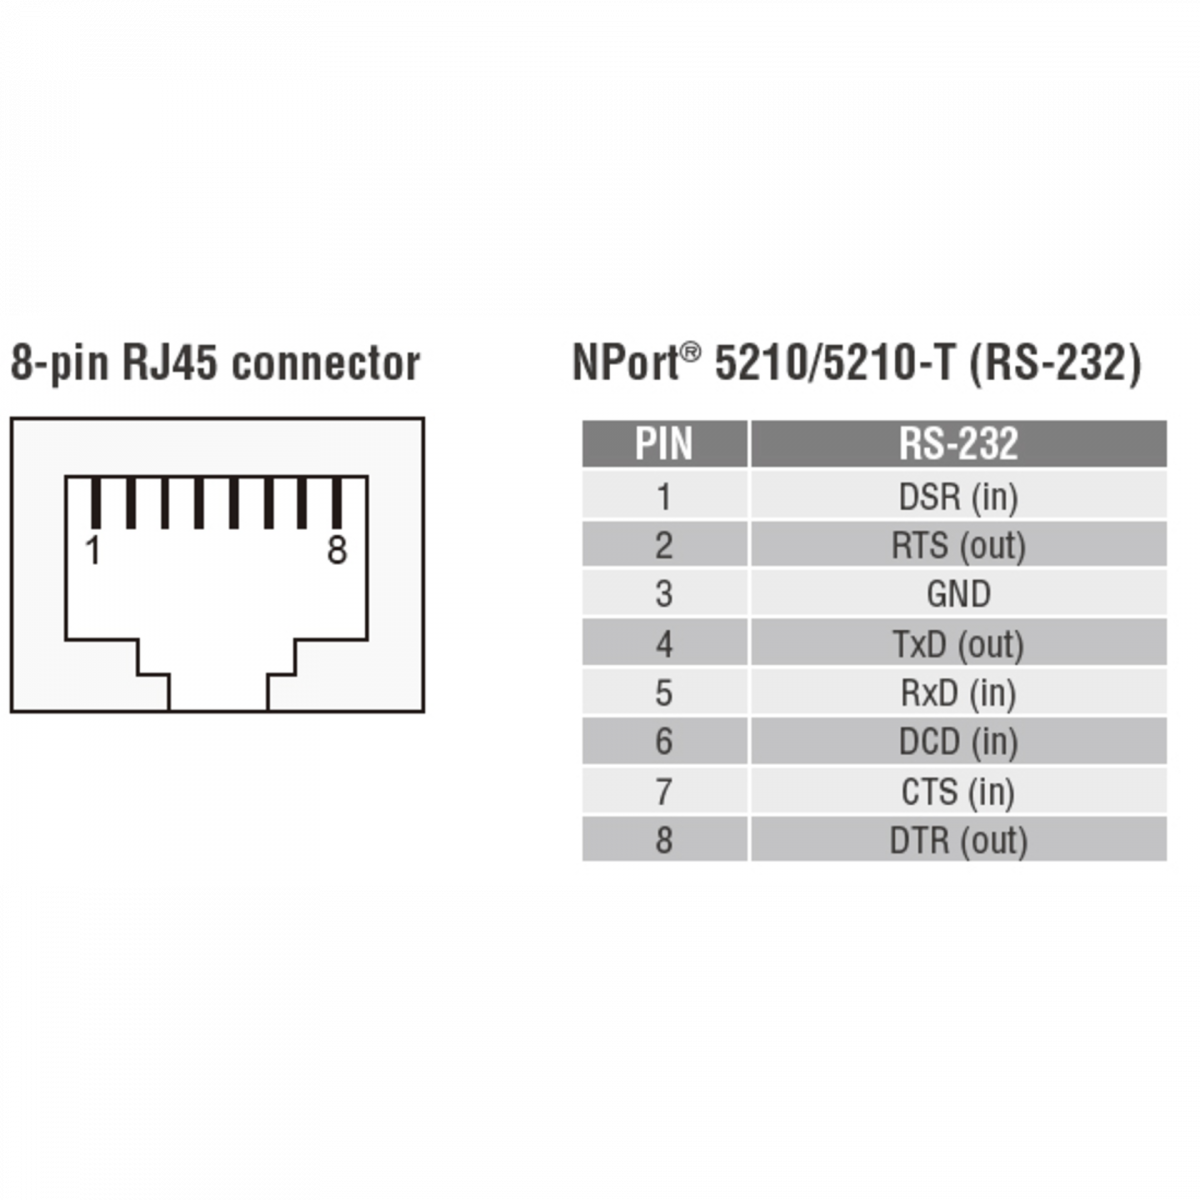 NPort 5232 2-портовый асинхронный сервер RS-422/485 в Ethernet MOXA